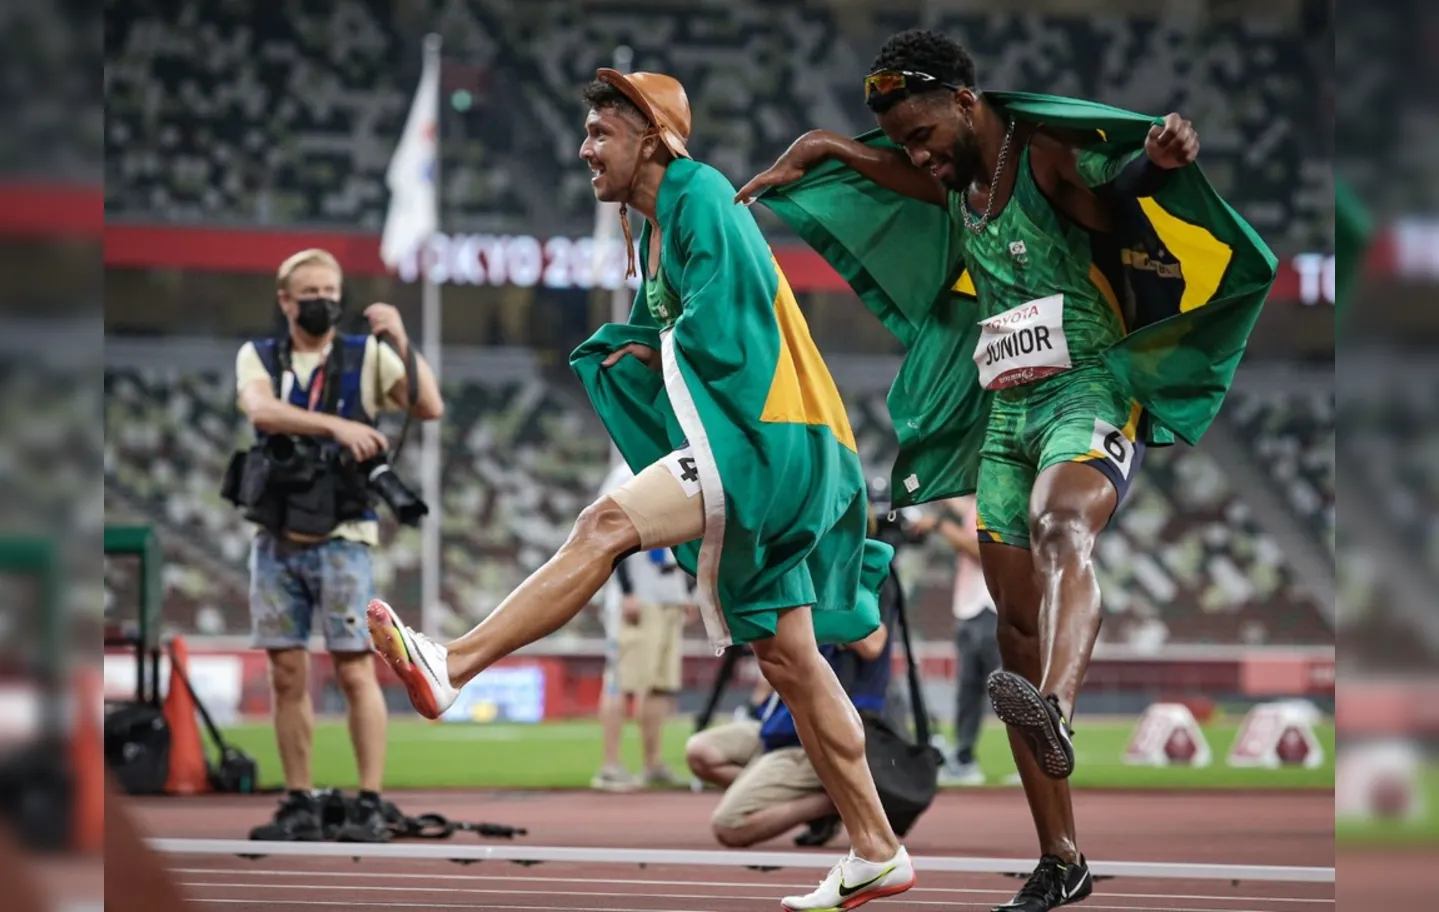 Brasil superou 100 medalhas de ouro em paralimpíadas | Foto: Wander Roberto | CPB @wander_imagem